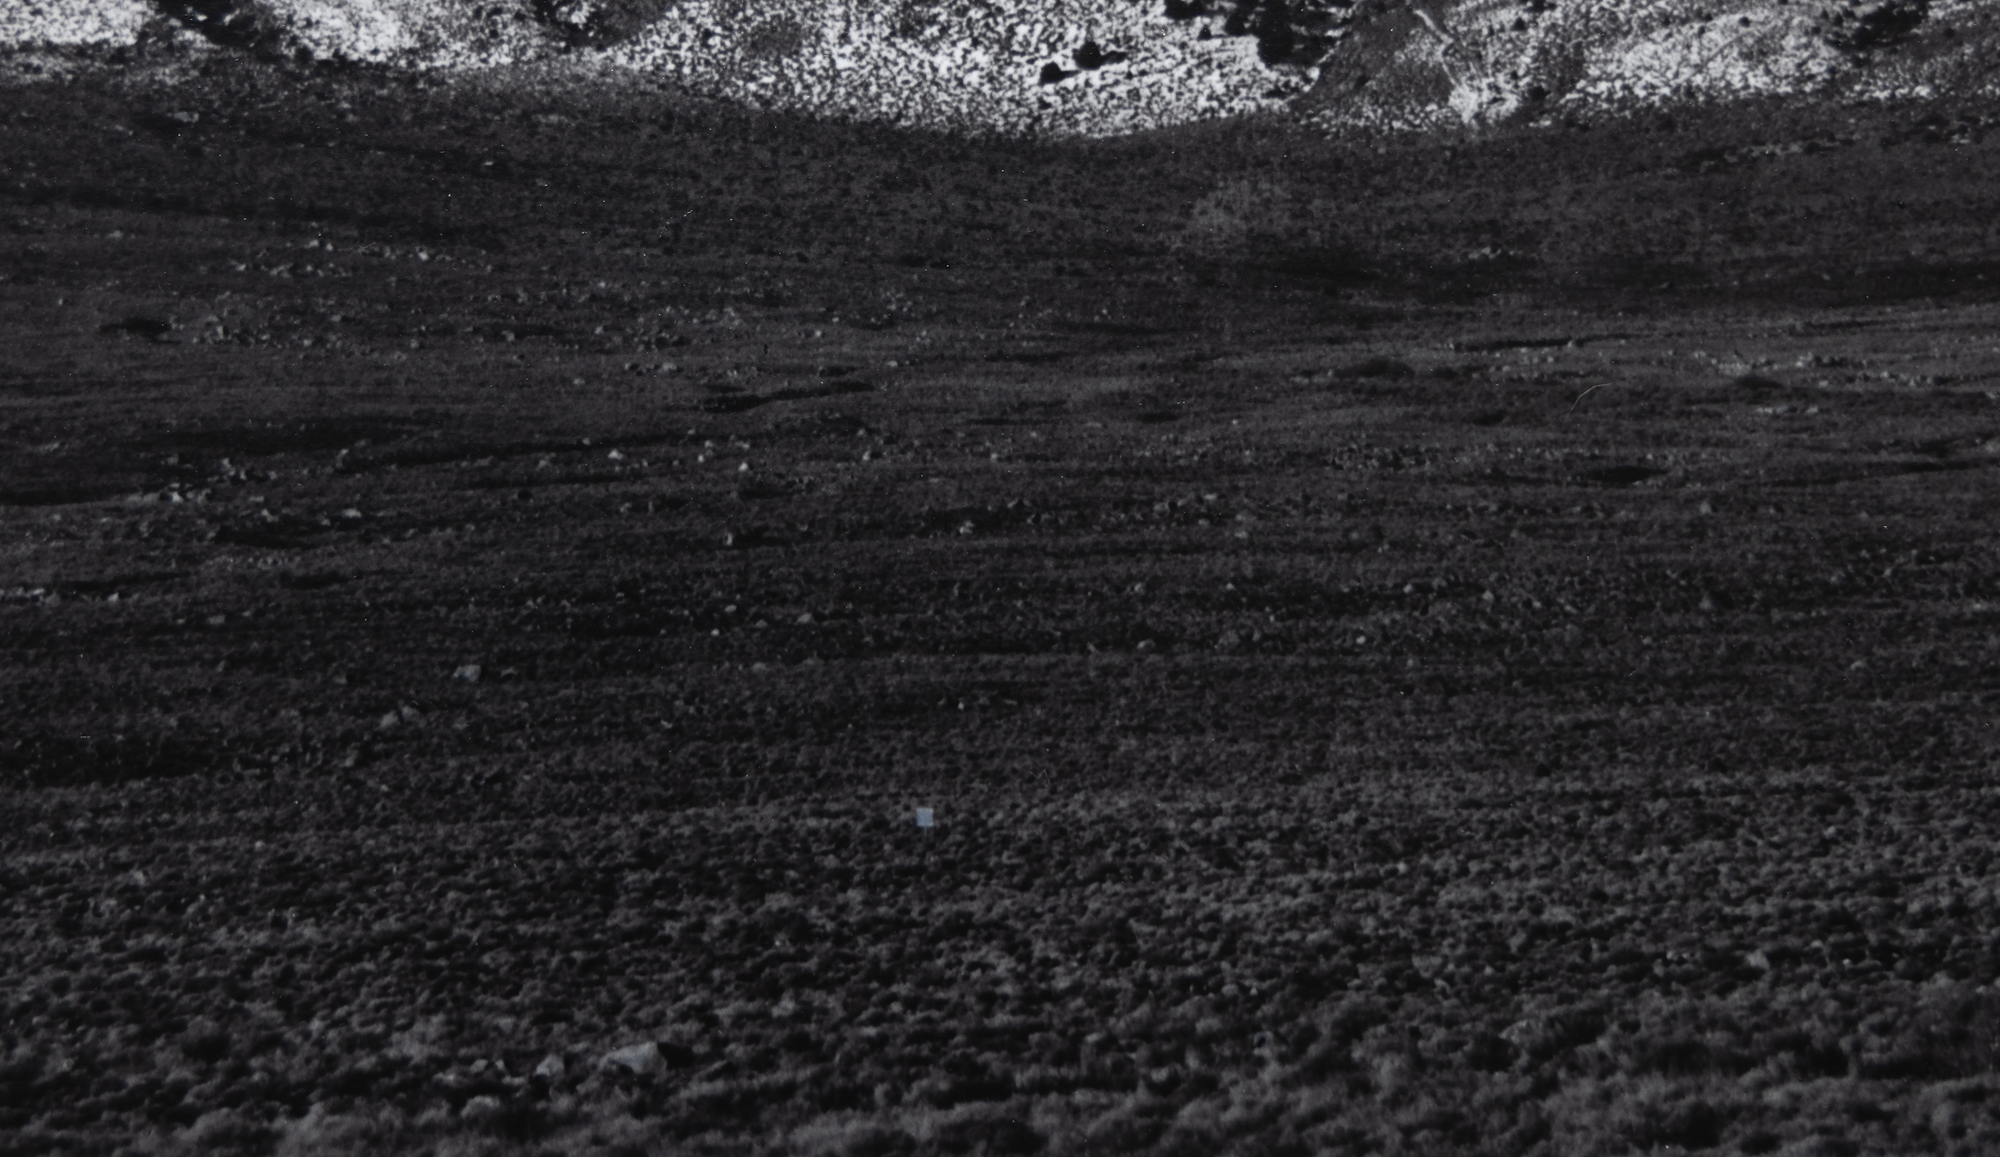 לחקירתו של אנסל אדמס את עמק אוונס ולנופים של הצד המזרחי המתנשא של הרי סיירה נבדה יש משמעות עצומה. הם בין התצלומים האיקוניים ביותר שאפשרו לאדמס ללכוד את ההוד הסוחף של סיירה נבאדה תוך מתן רושם חי של העומק והמרחב של קרקעית העמק הצחיח. הר ויליאמסון, סיירה נבאדה, מעמק אוונס, צולם ככל הנראה בשנת 1944, זמן קצר לאחר שילוב מערכת Zone שאפשרה טווח גוונים רחב וחשיפה מאוזנת עם בהירות הן באור והן בצל. הדוגמה הנוכחית, שהודפסה באוגוסט 1978, נמצאת באוסף של מוזיאונים רבים, אך בקרב אספנים היא בין ההדפסים הנדירים יותר של אנסל אדמס.